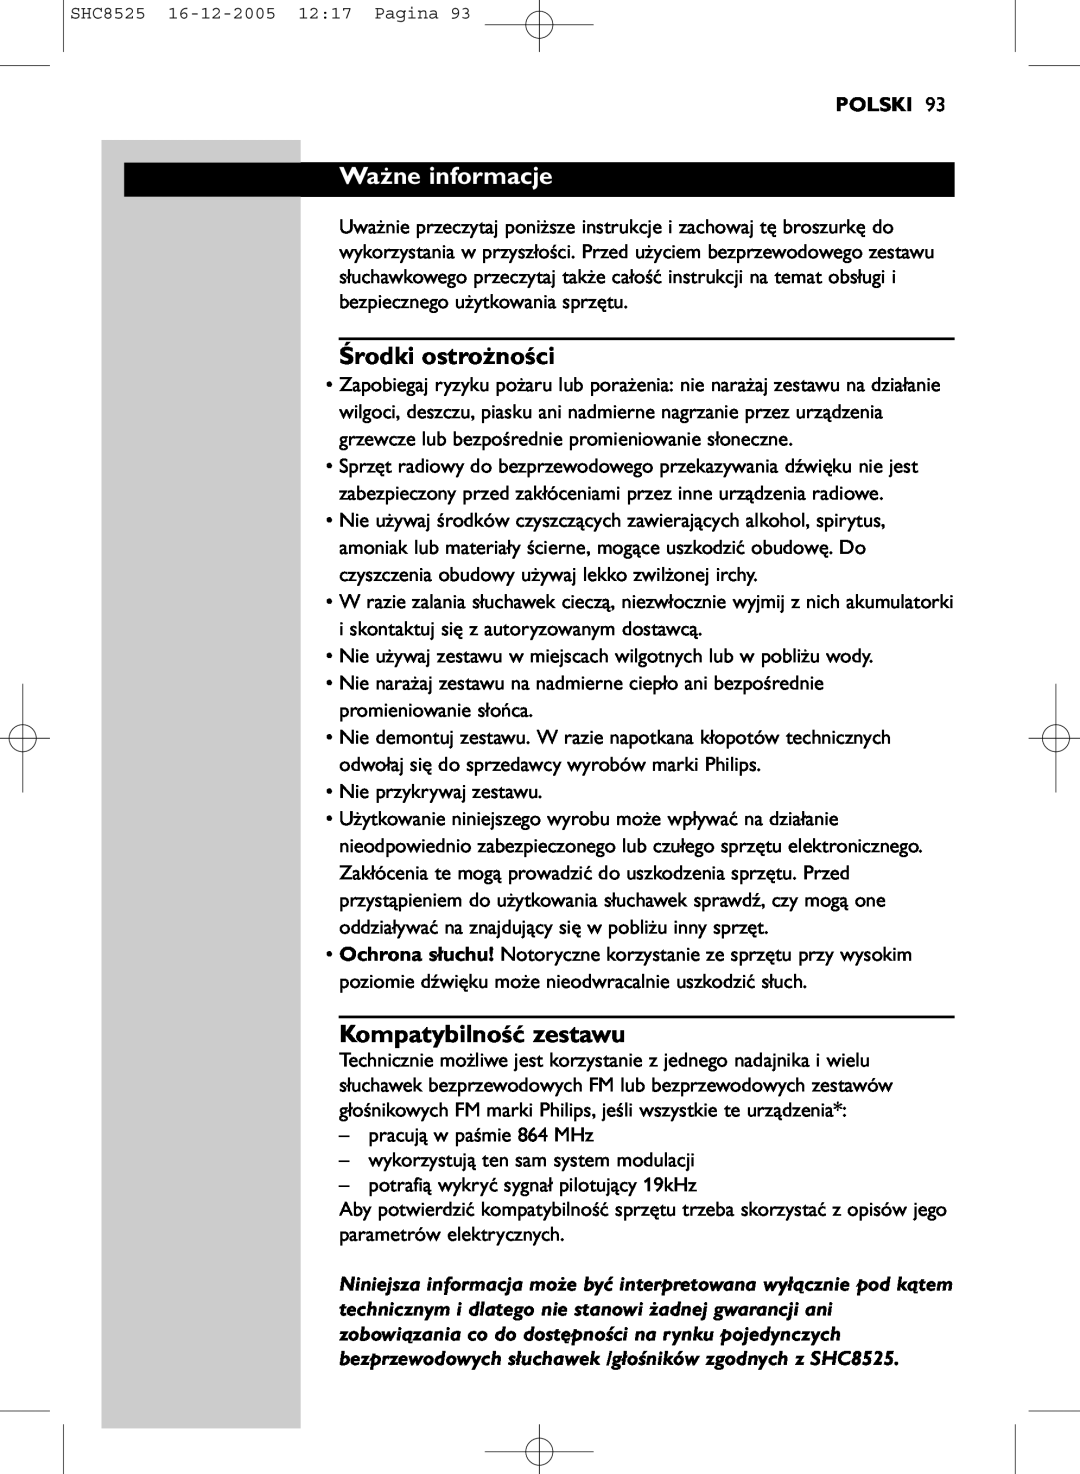 Event electronic SHC8525 manual Ważne informacje, Środki ostrożności, Kompatybilność zestawu, Polski 